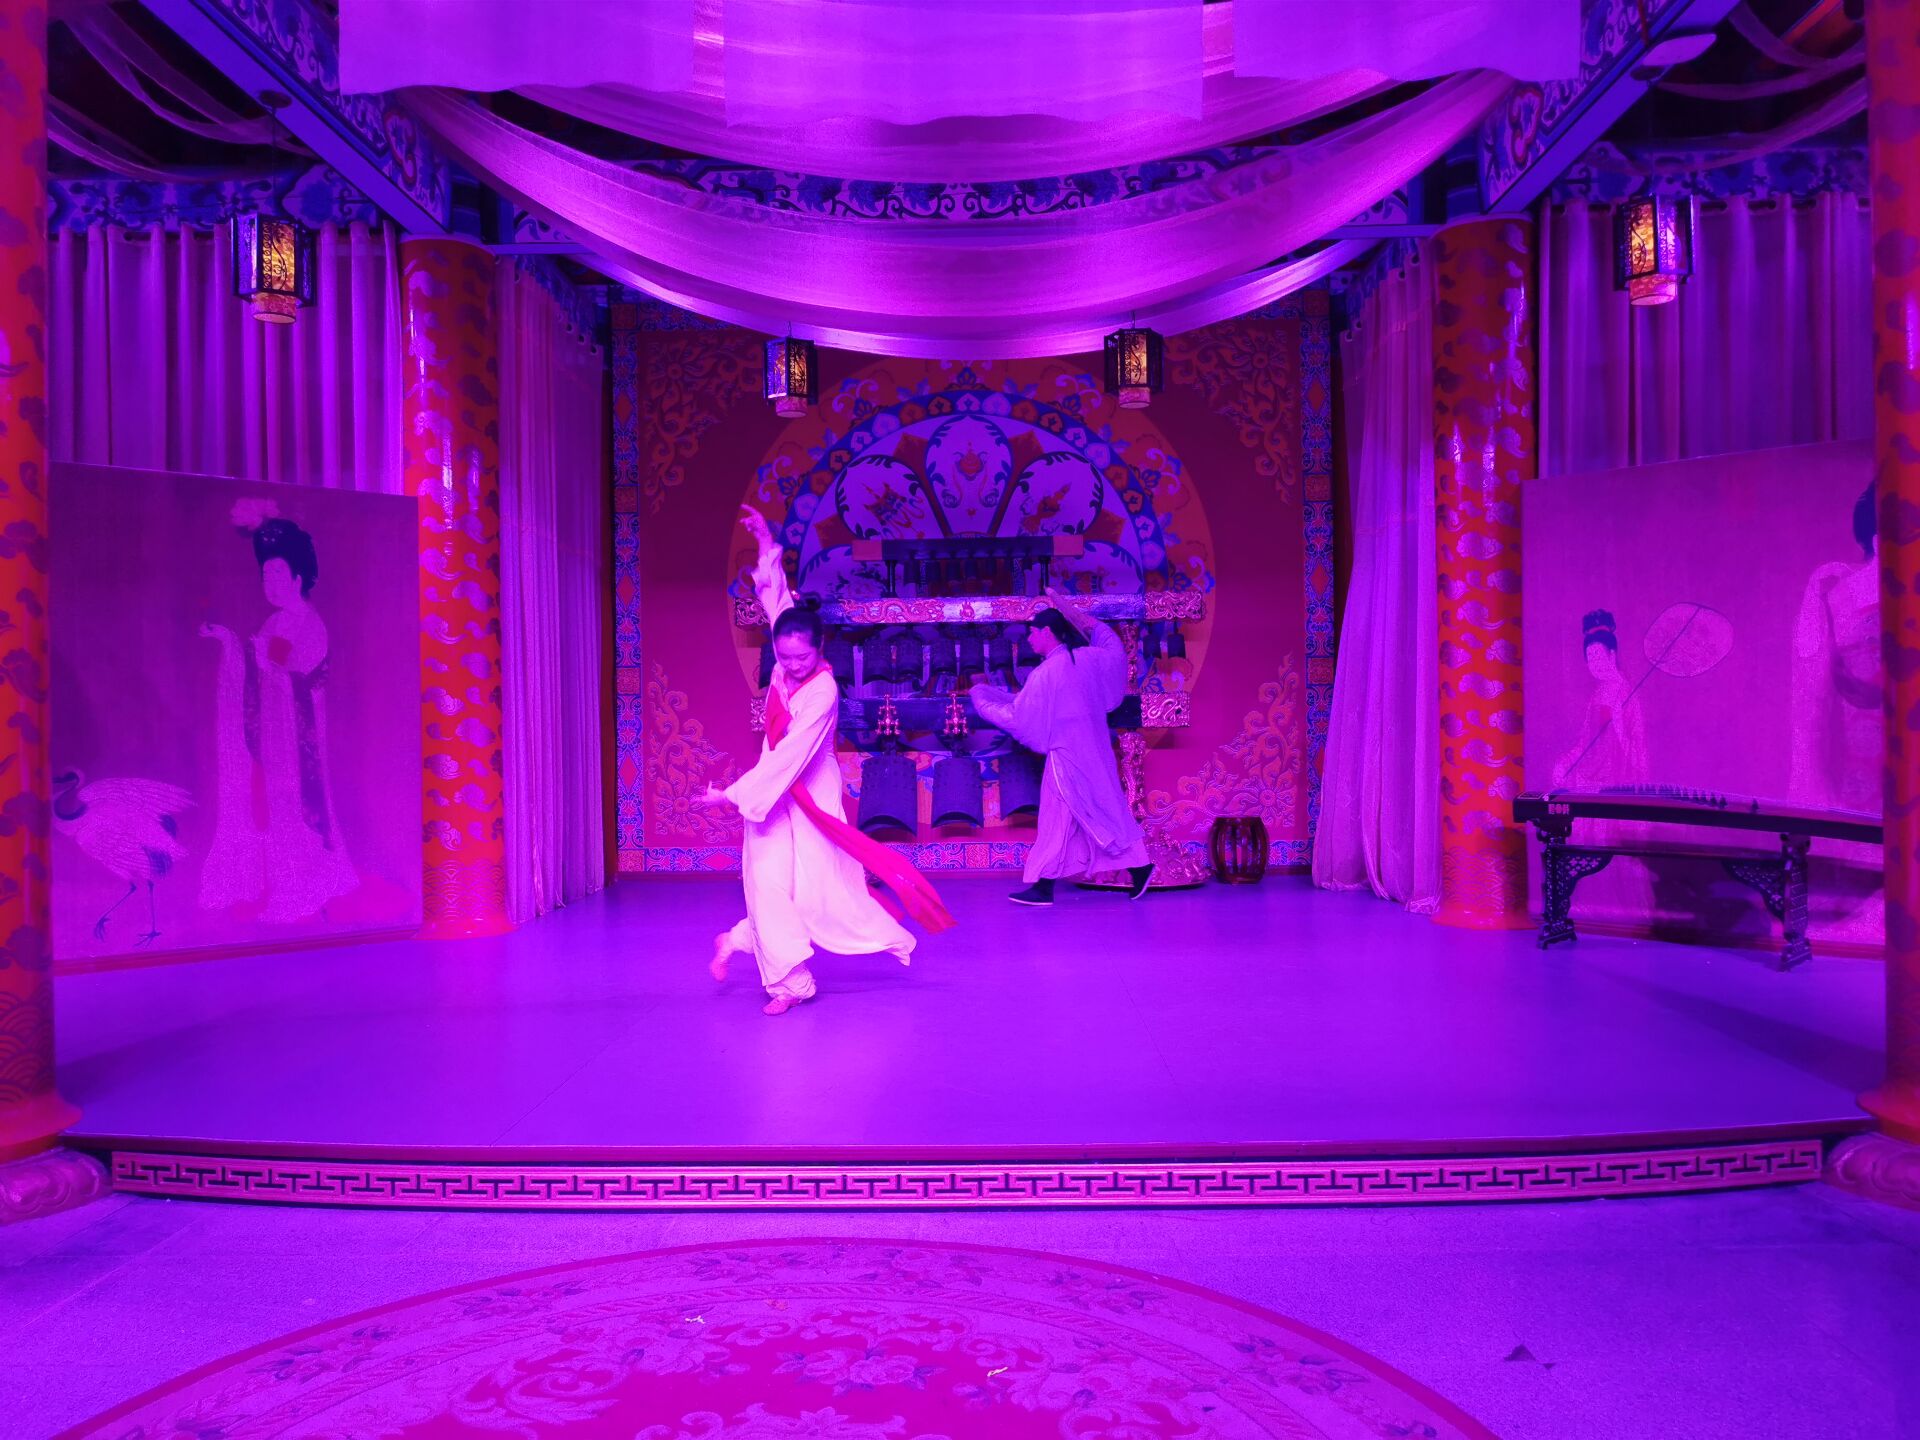 『憧れの西安⑧：歌舞大劇院にて唐歌舞ショーを楽しみました。』西安(中国)の旅行記・ブログ by sikizakuraさん【フォートラベル】